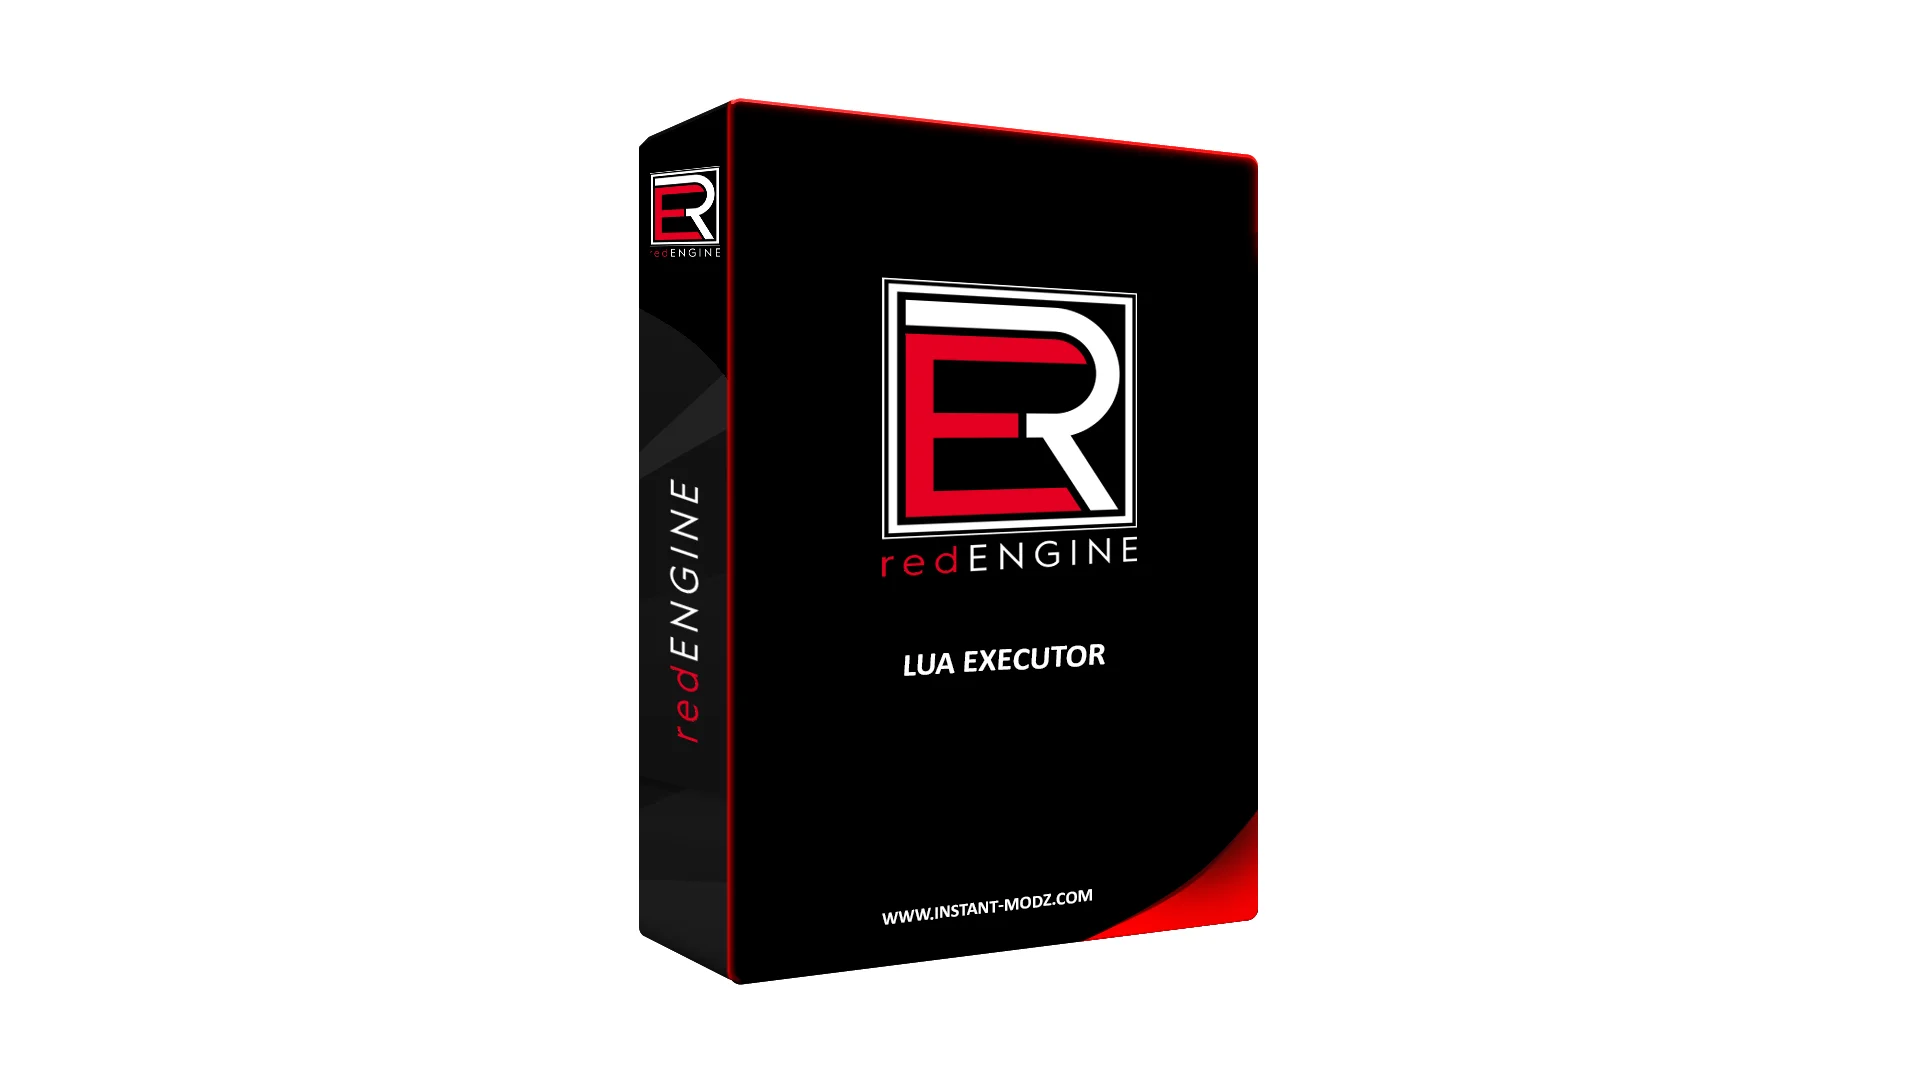 redENGINE - Lua Executor - Instant modz